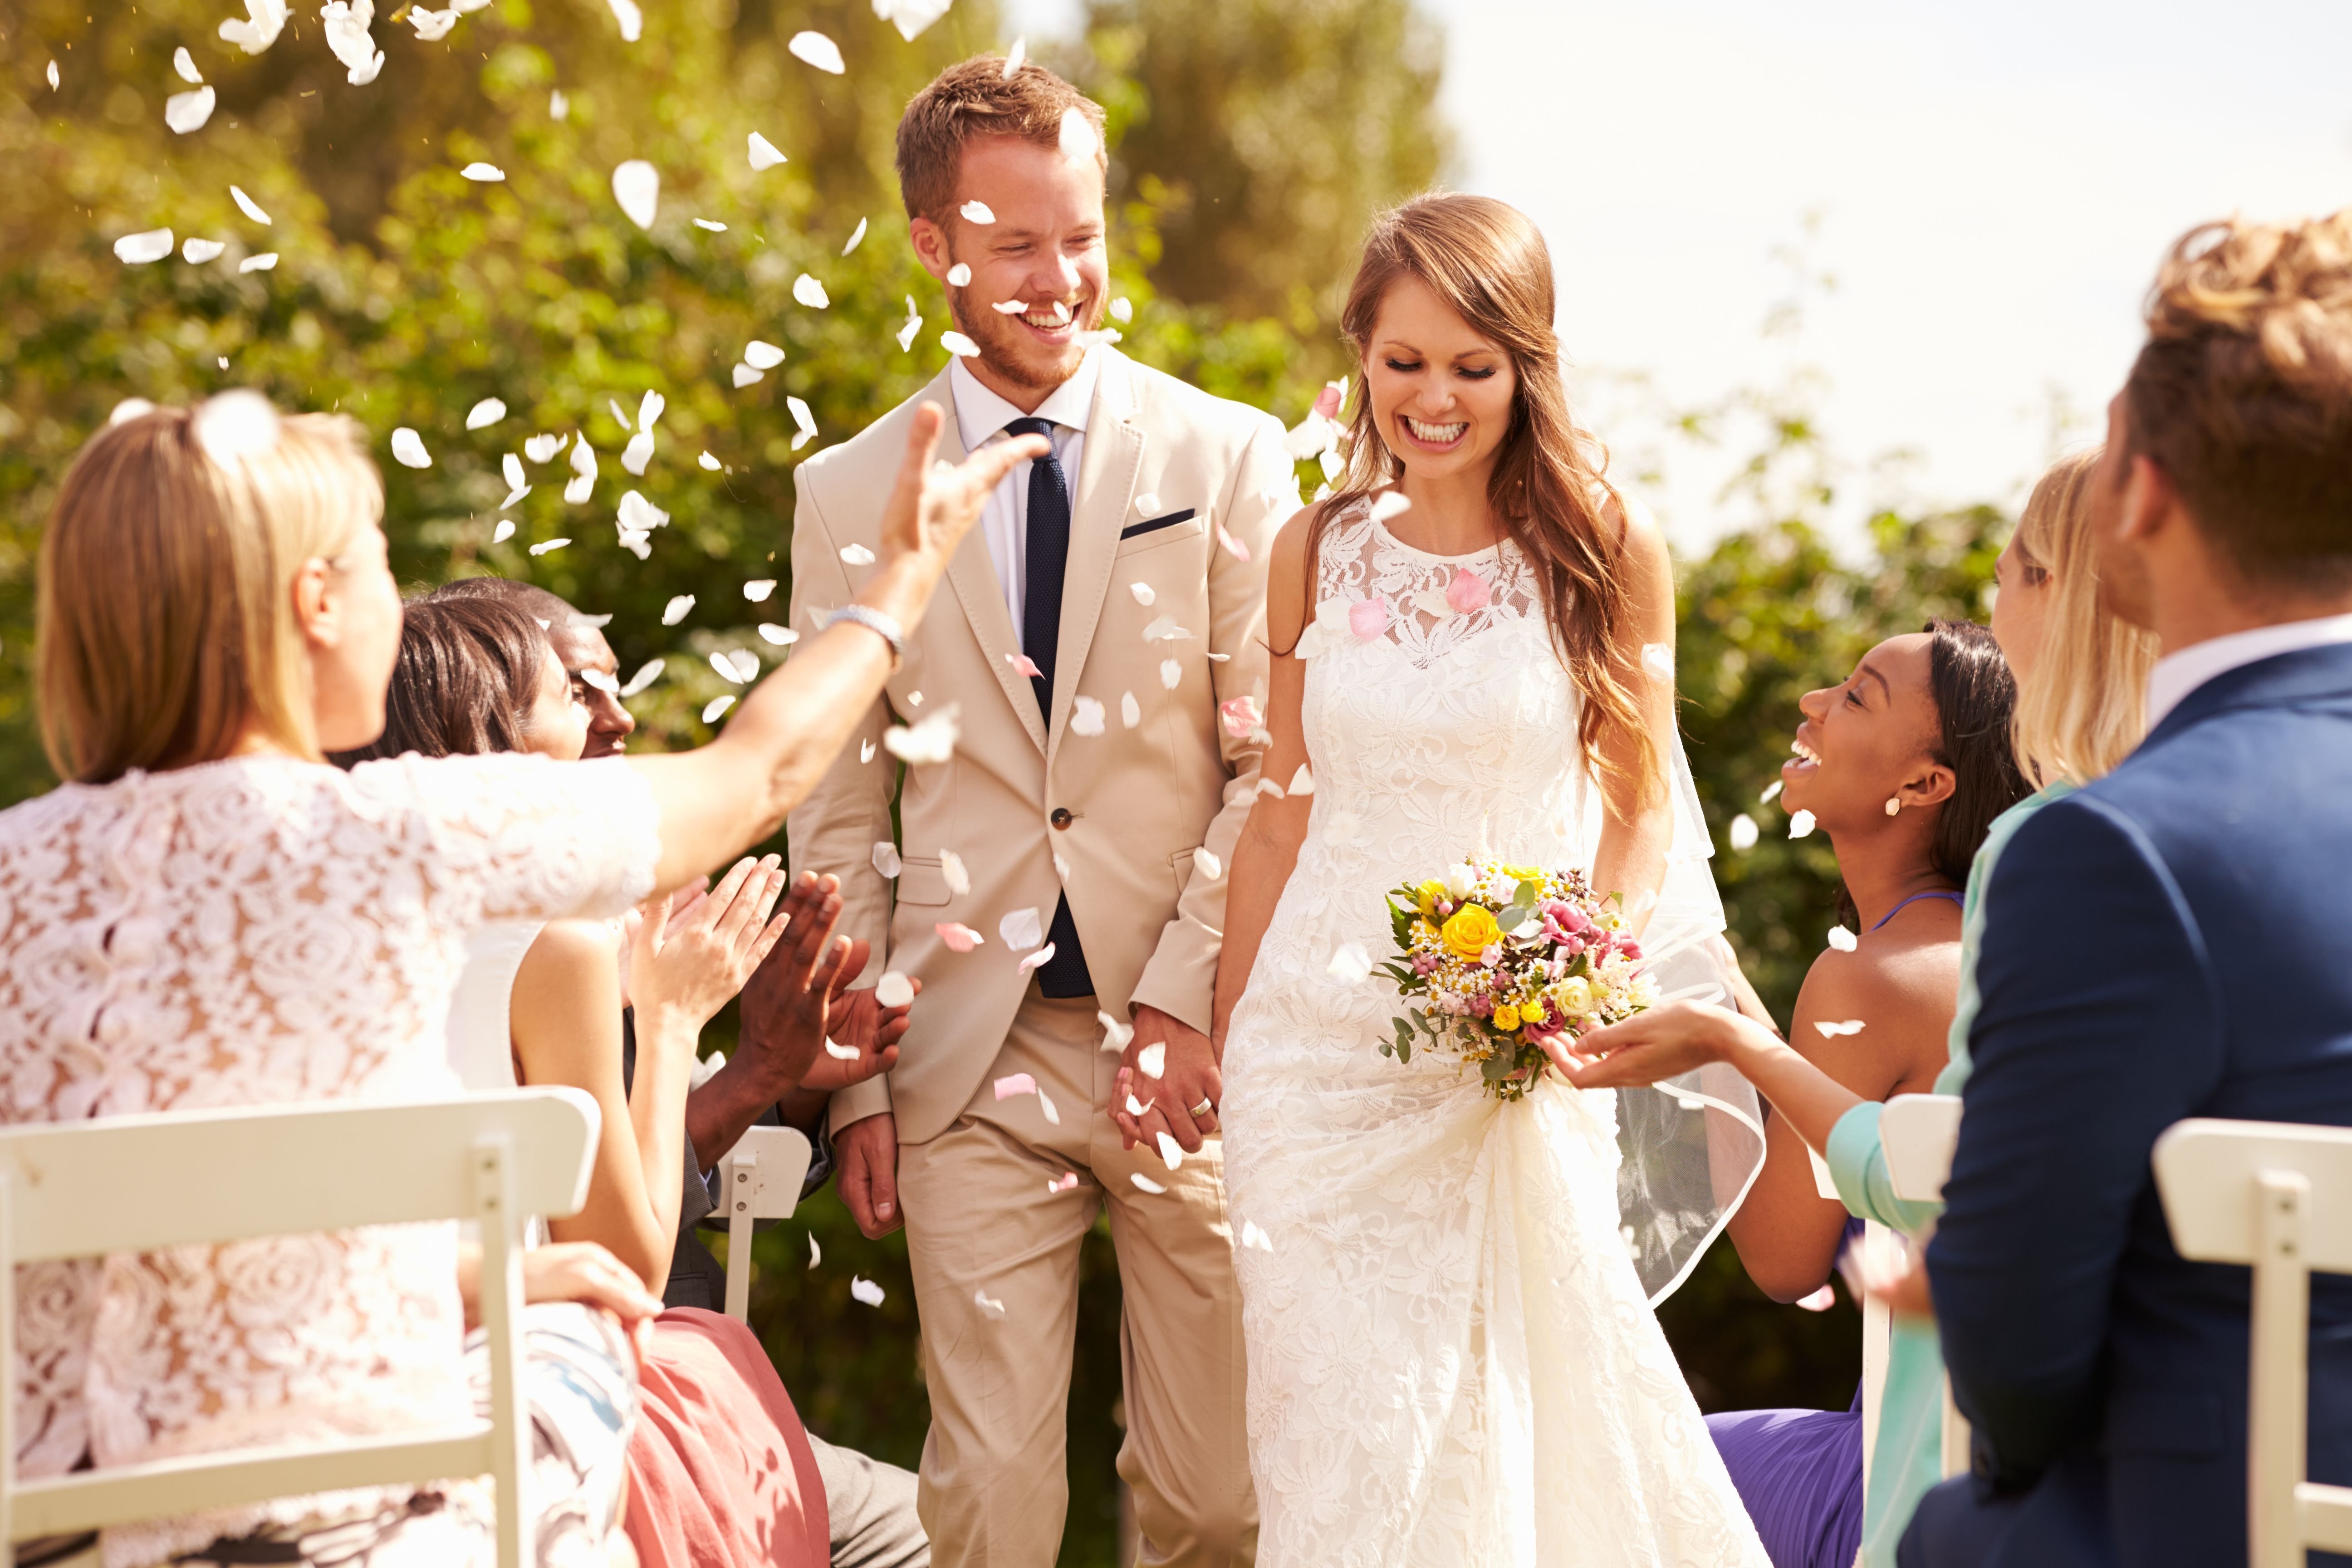 Тенденции современного брака и семьи. Кьяра Ферраньи 2022. Красивая свадьба. Молодожены. Свадебные фотографии.